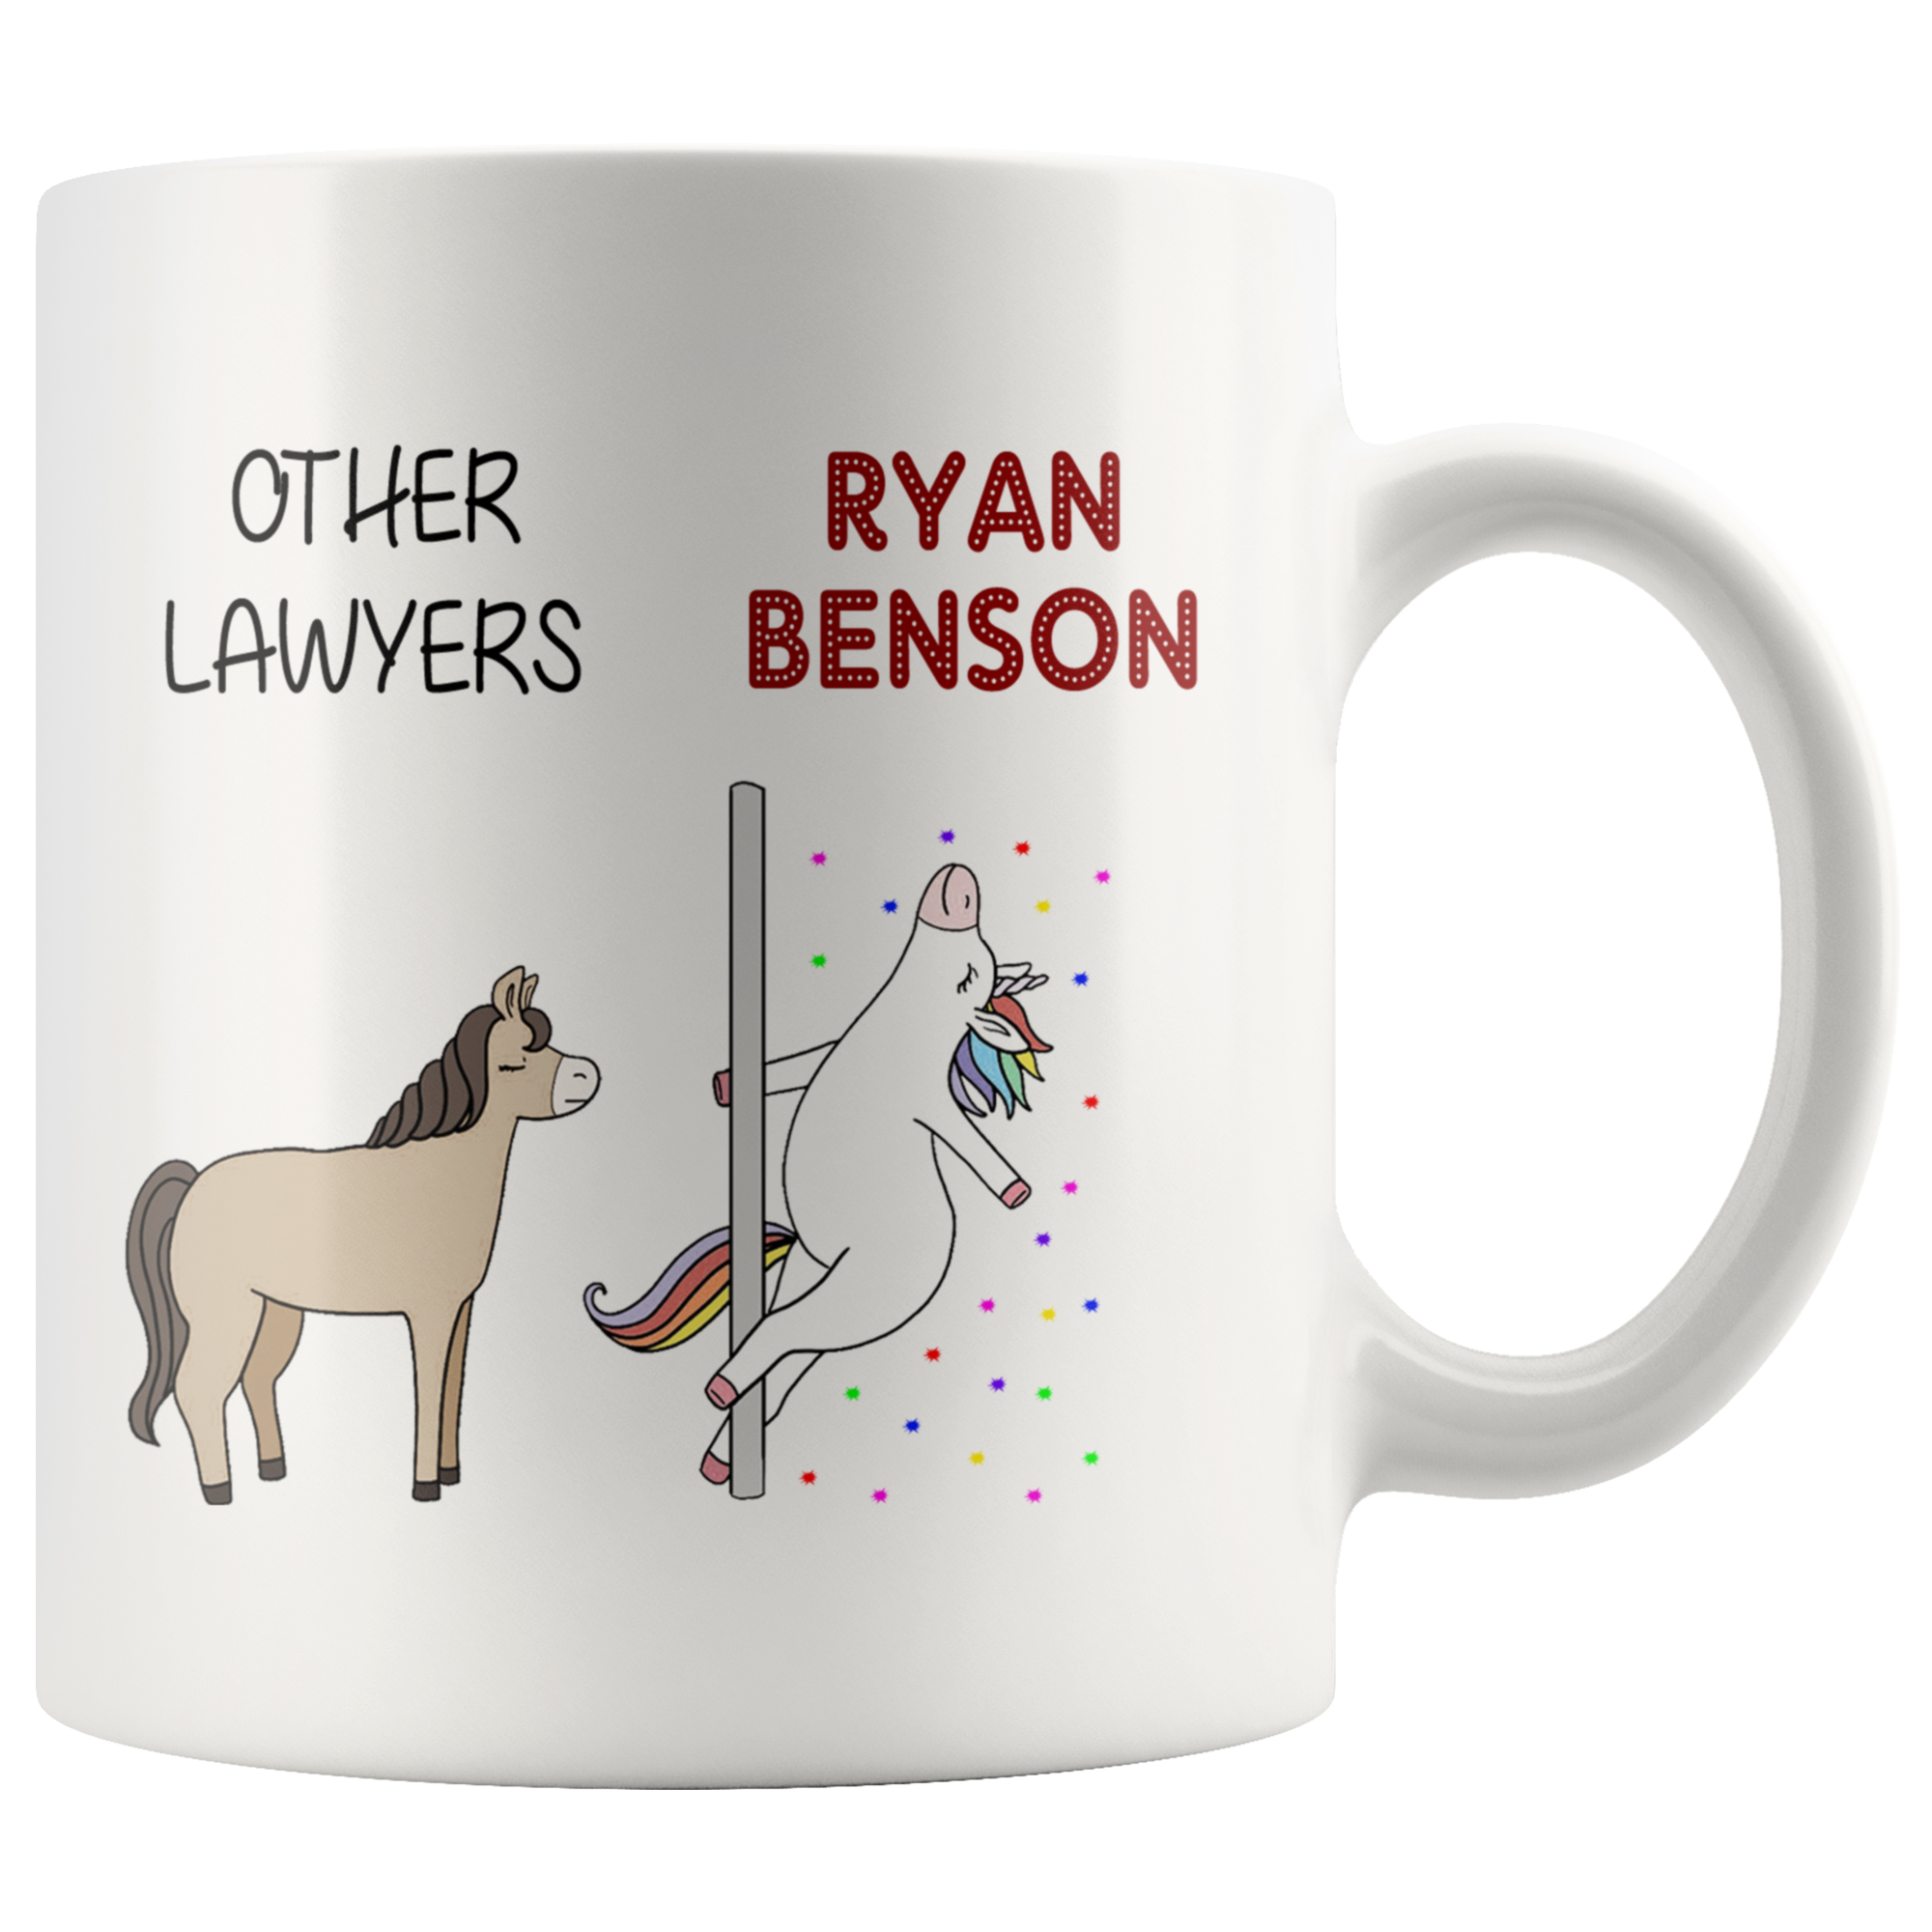 Benson Benson